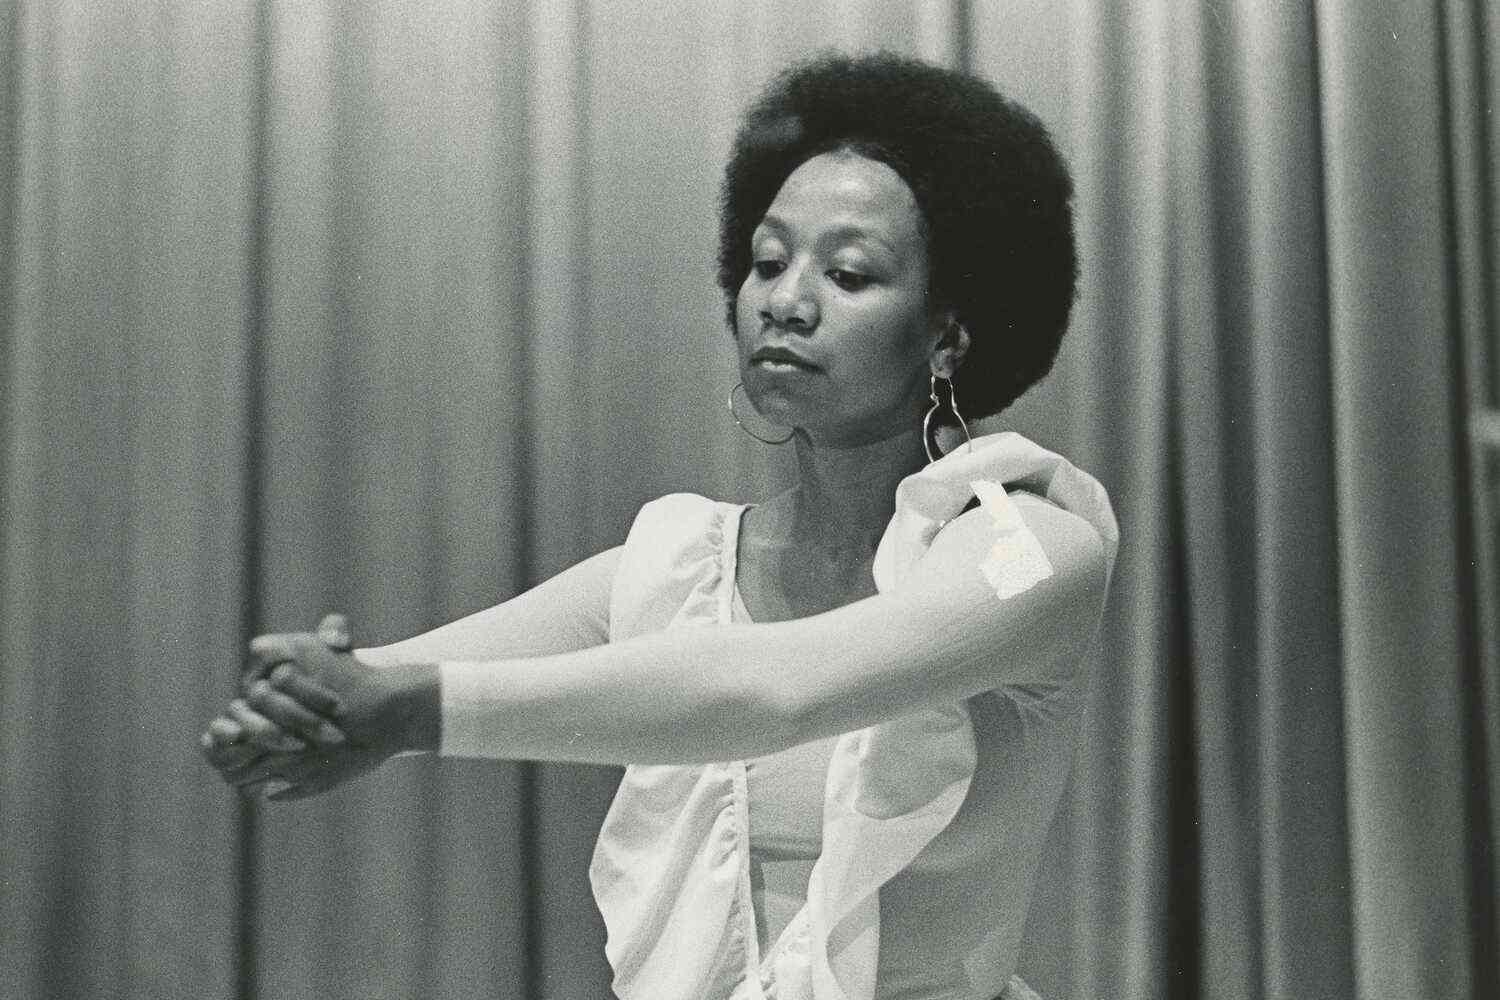 Africa dance pioneer Kariamu Welsh dead at 72